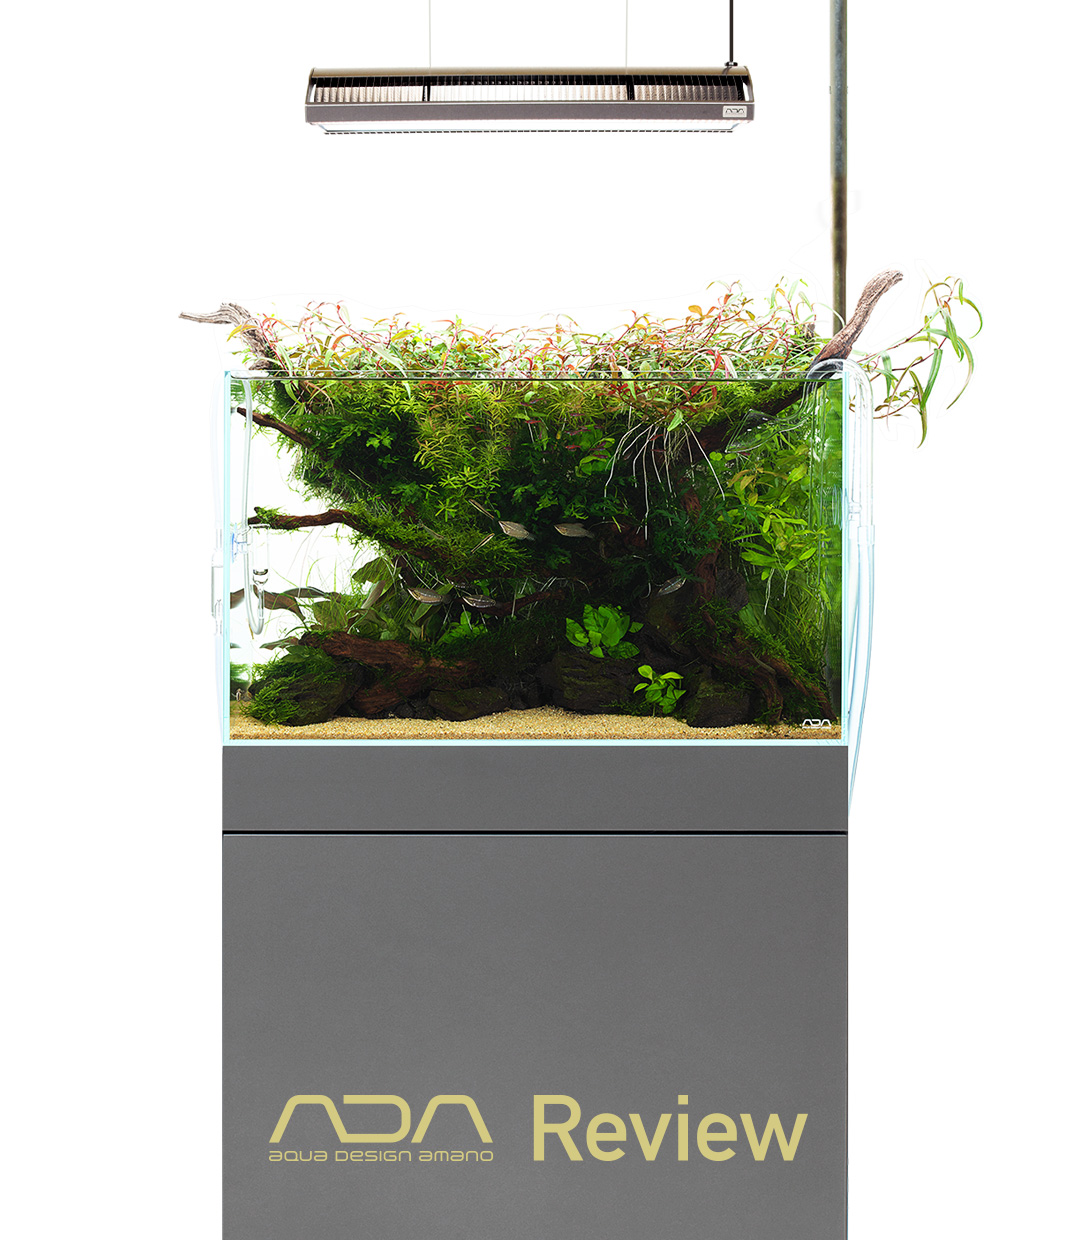 ADA Review 「一歩進んだ60㎝水槽システム」